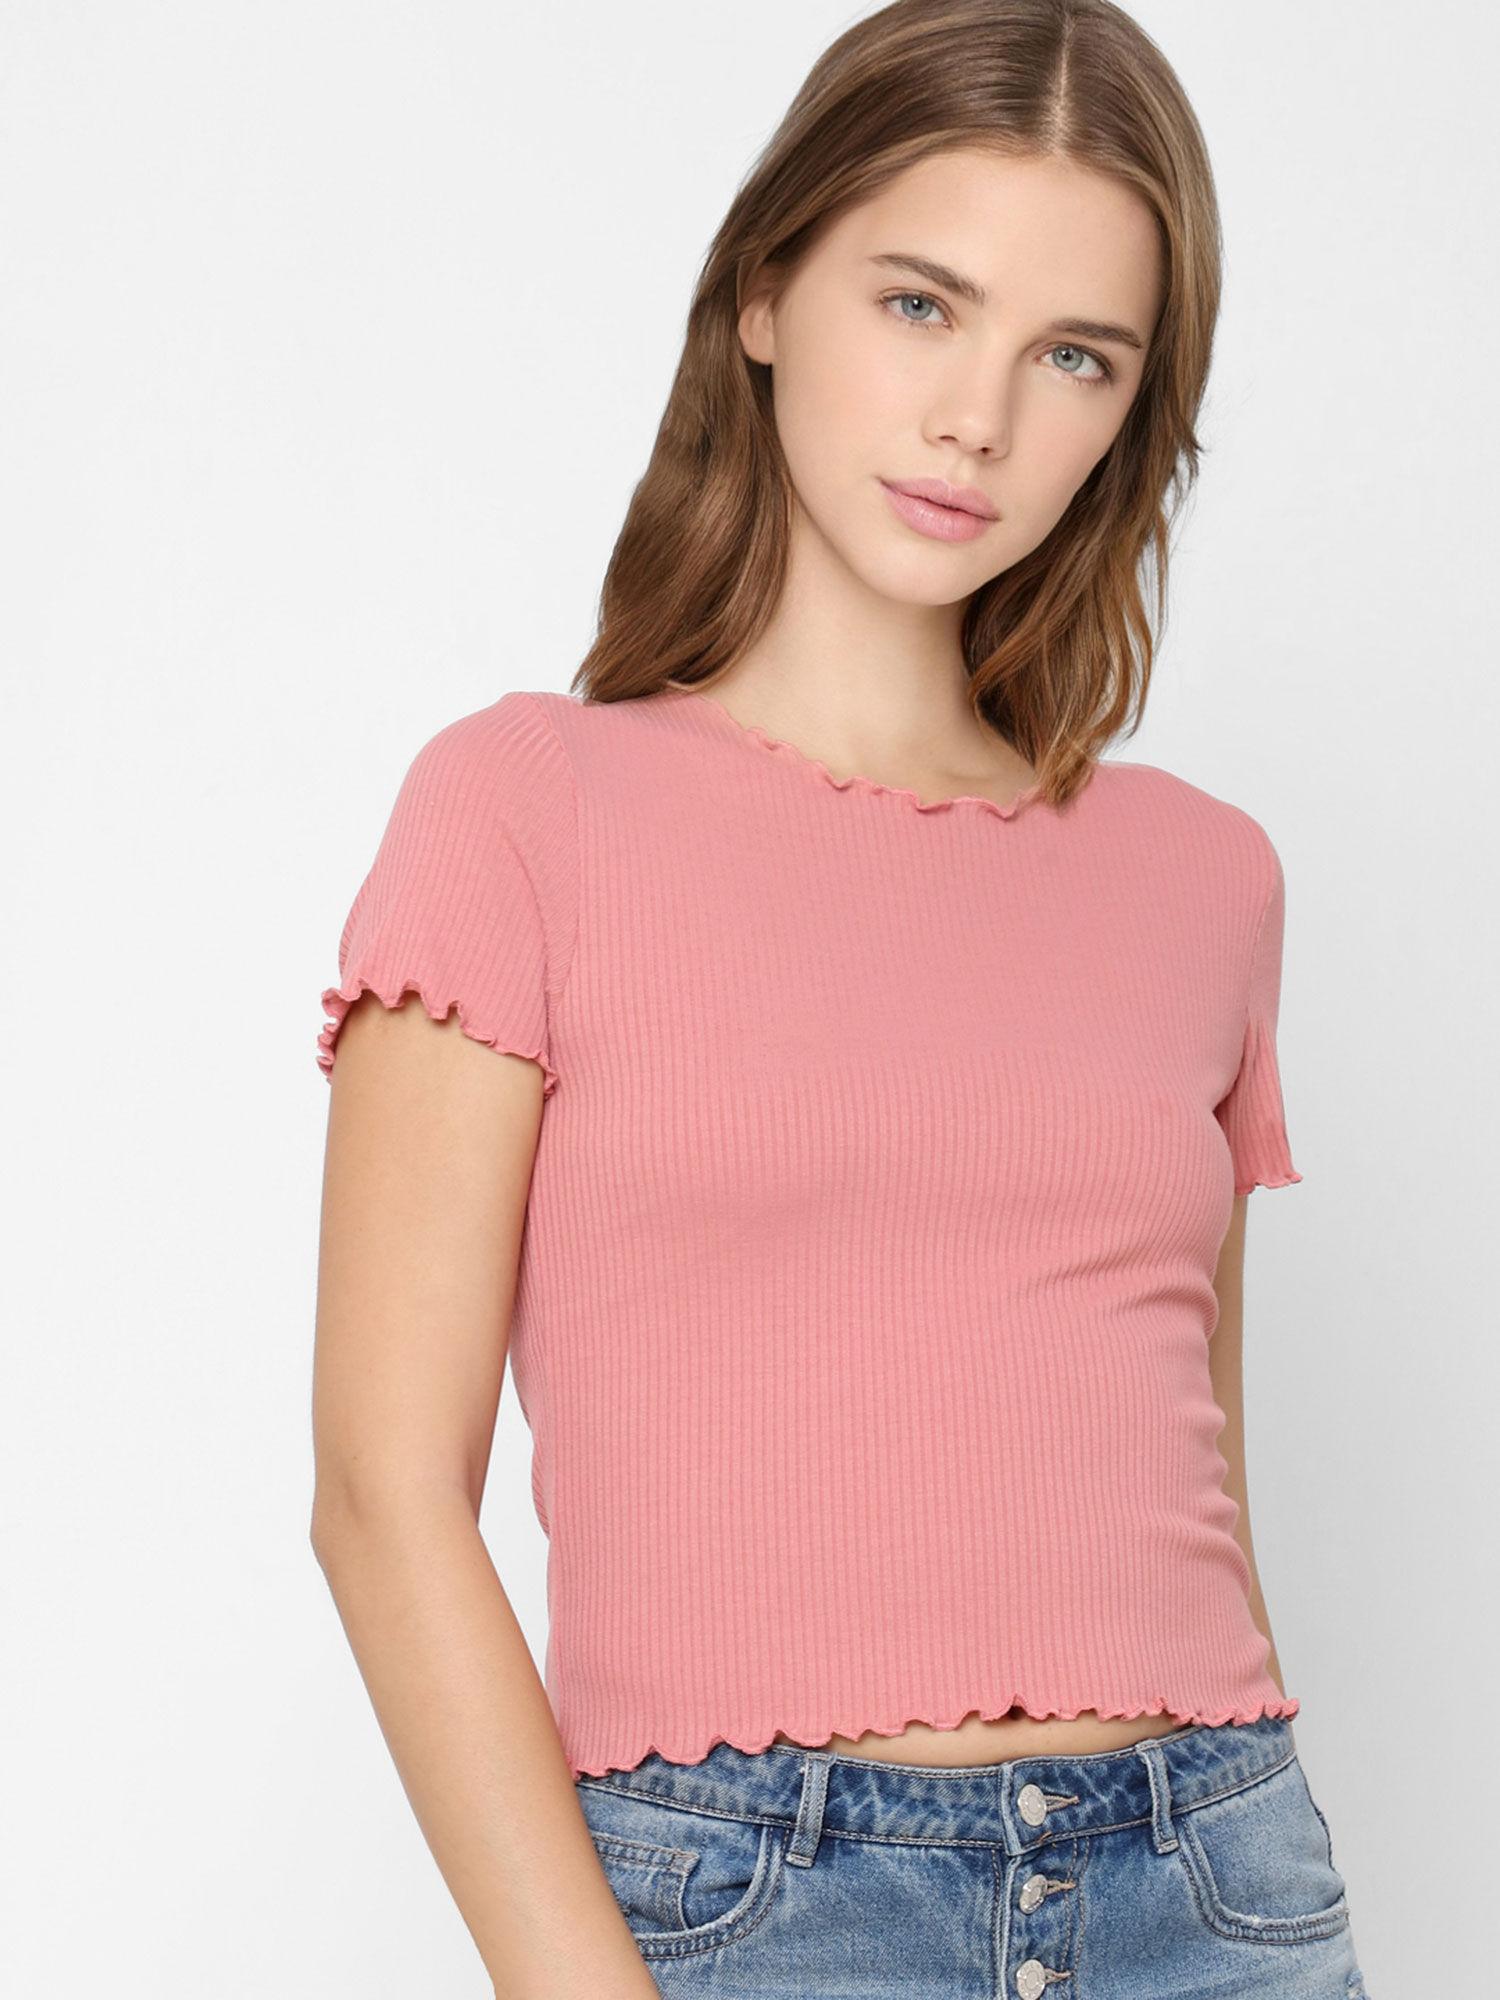 women casual wear pink t-shirt